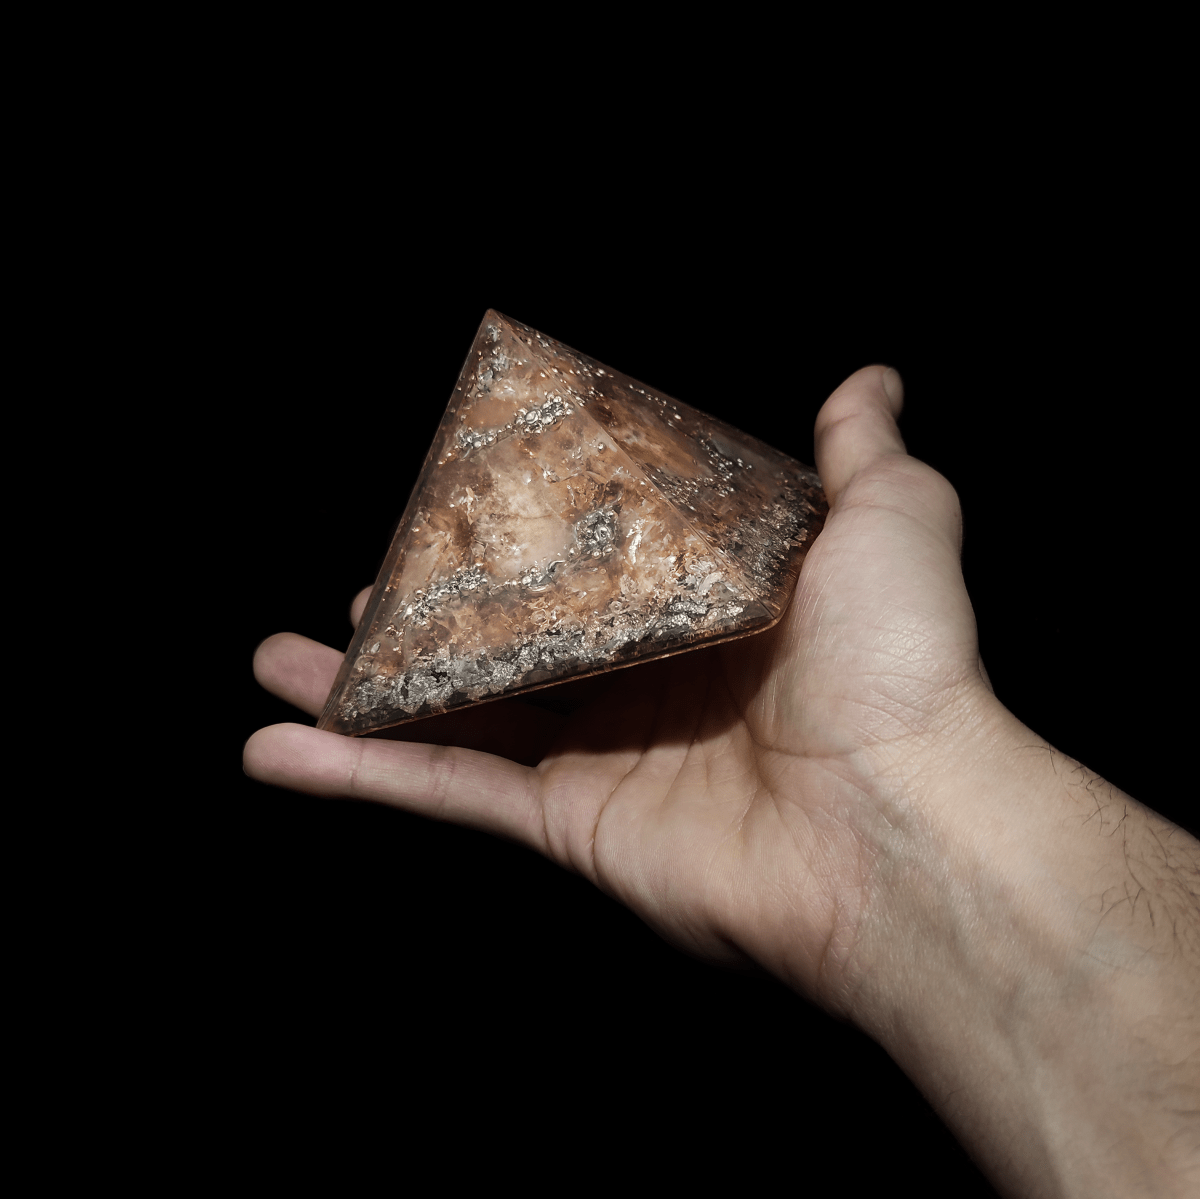 Hellbrauner Orgonit Pyramiden Kristall mit silbernen Elementen, welcher von einer Hand gehalten wird.